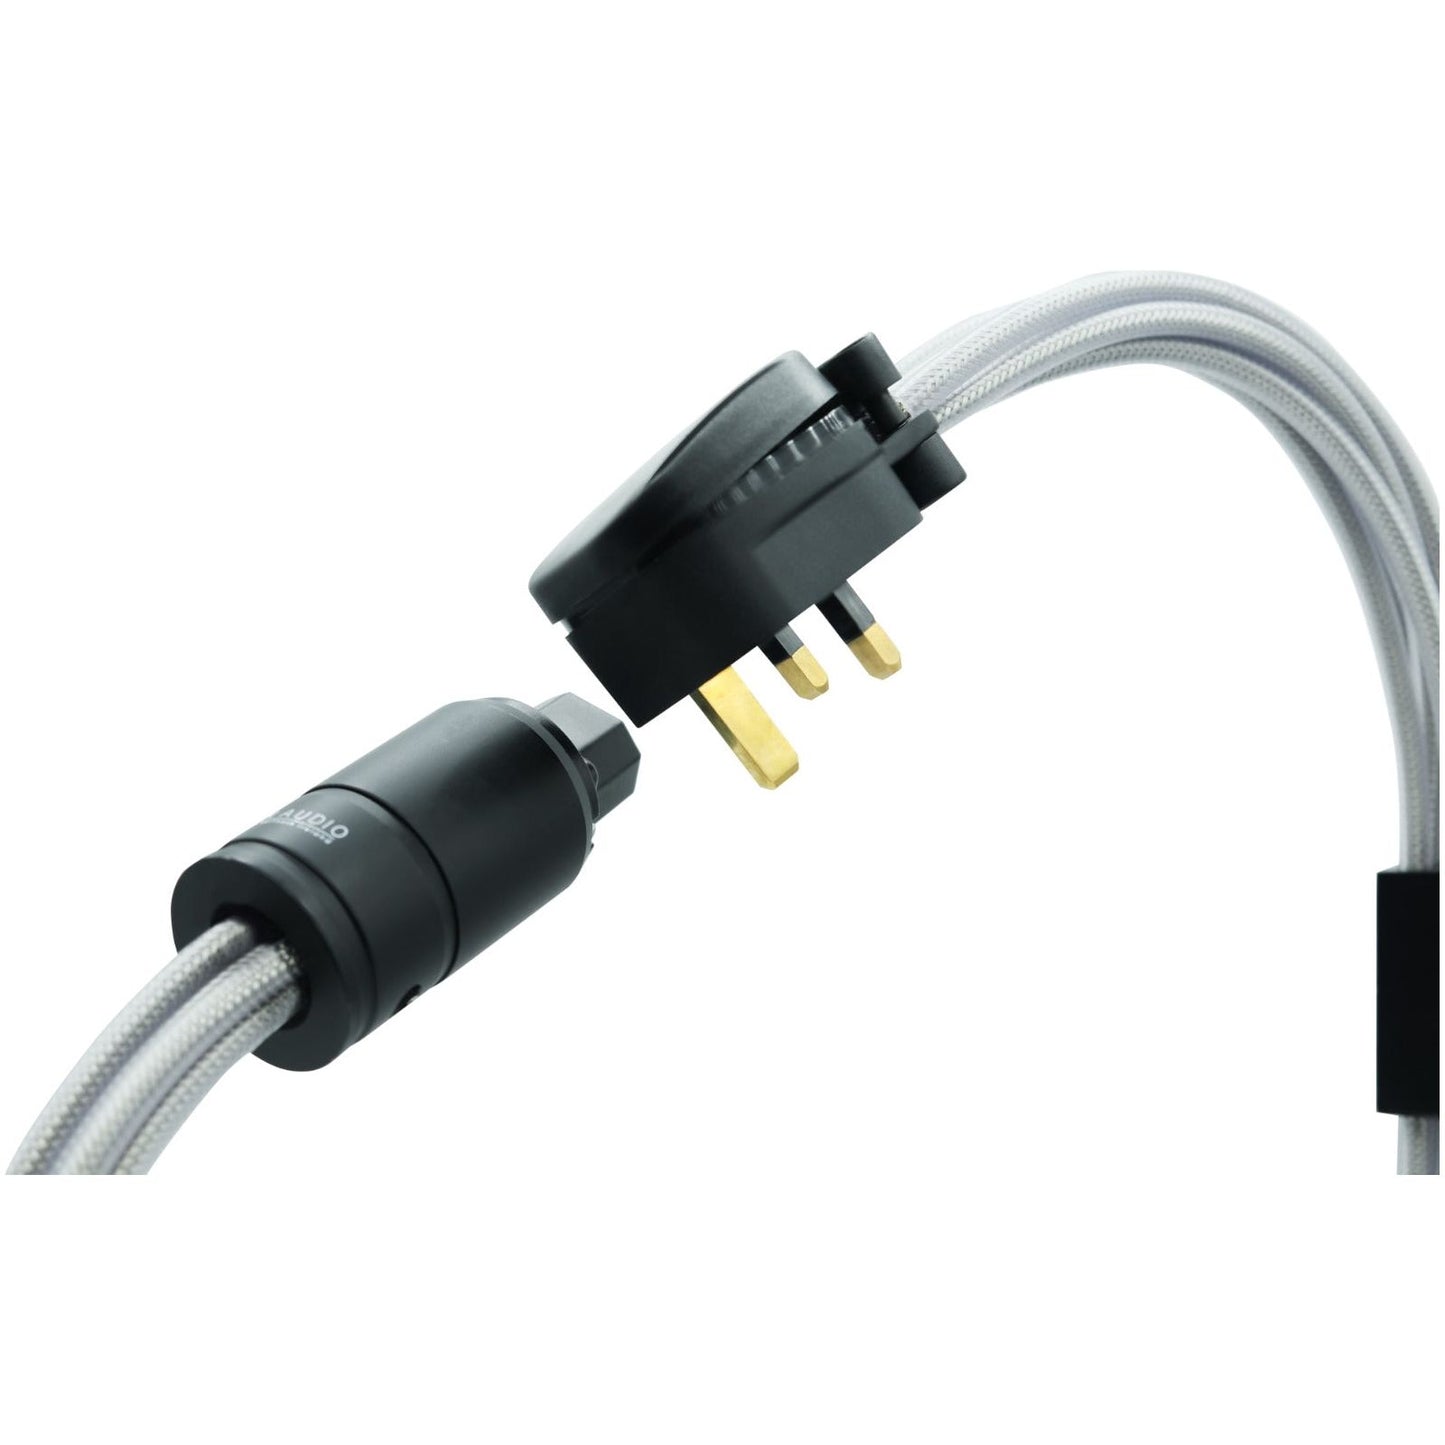 Titan Audio HS-X6 Mains Cable